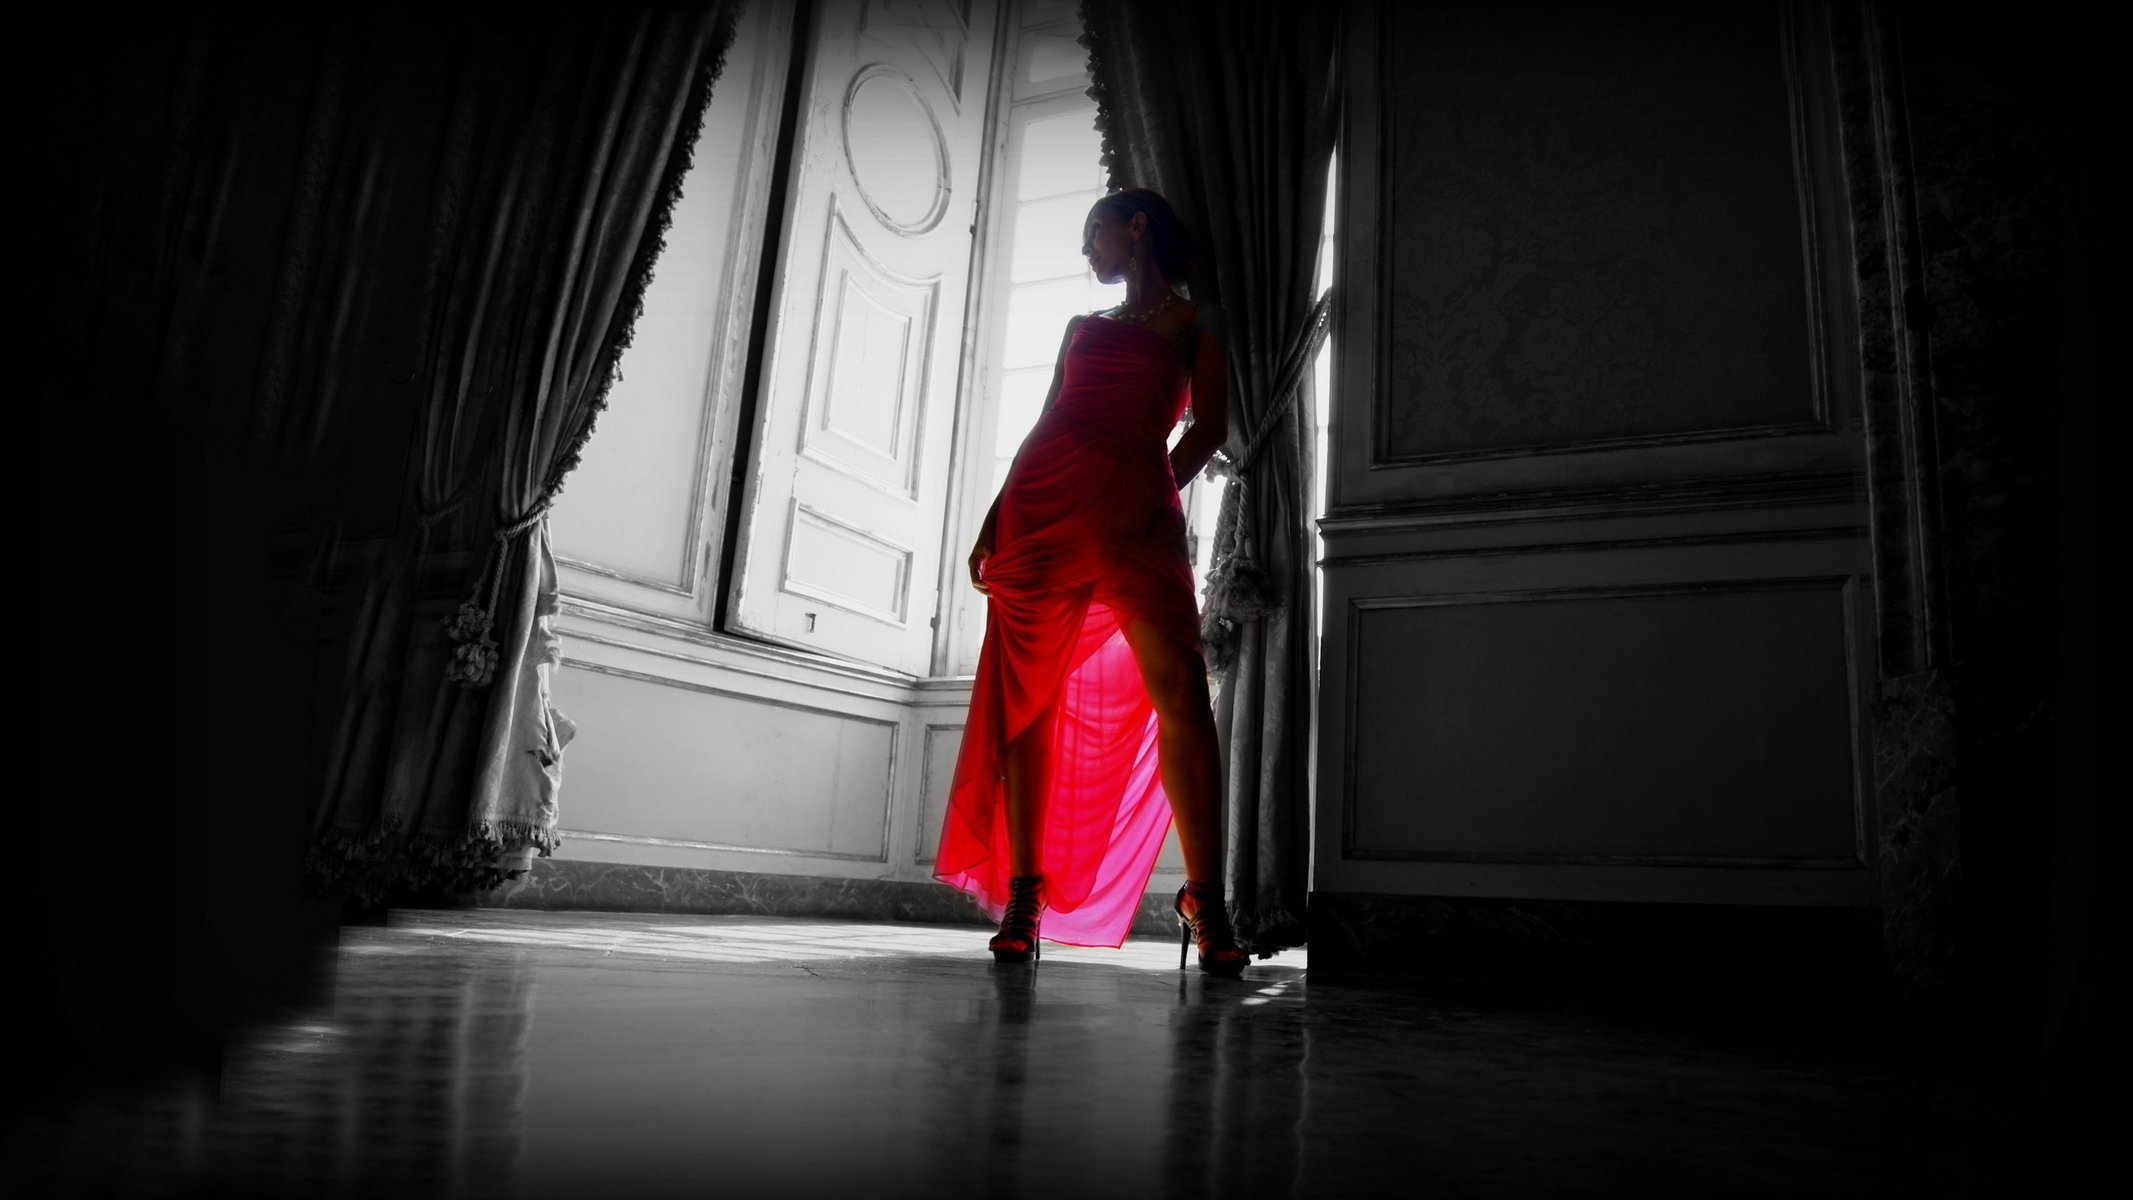 Тёлочка позирует в красном платье.